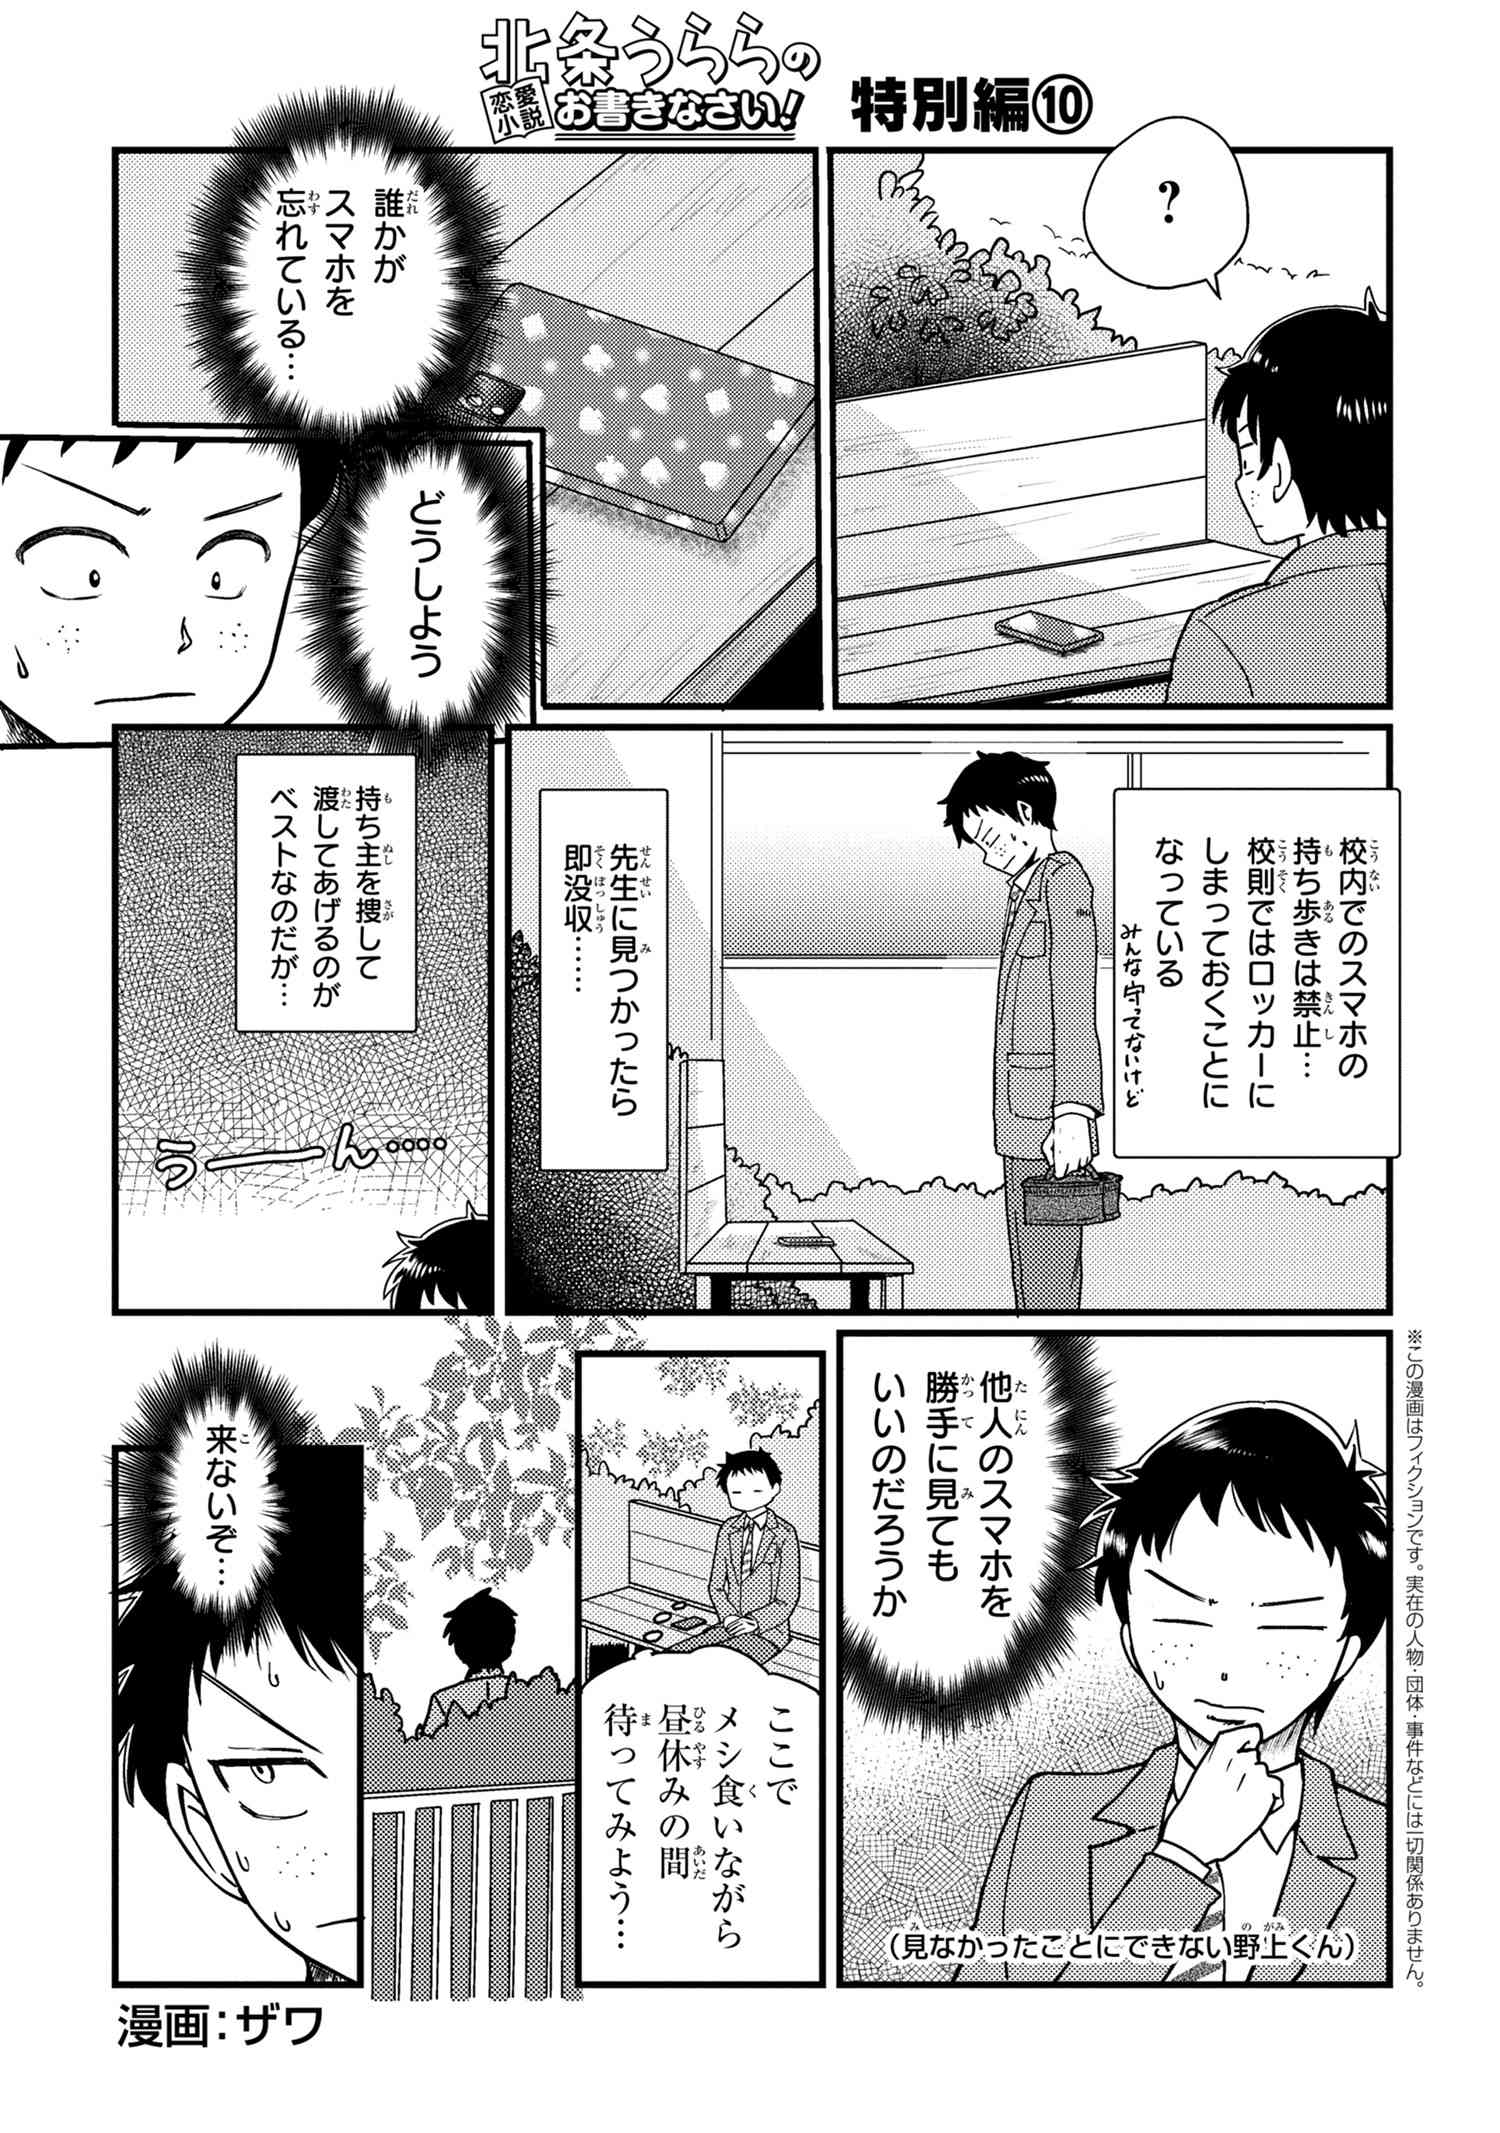 Houjou Urara no renai shousetsu o kaki nasai! - Chapter 10 - Page 1